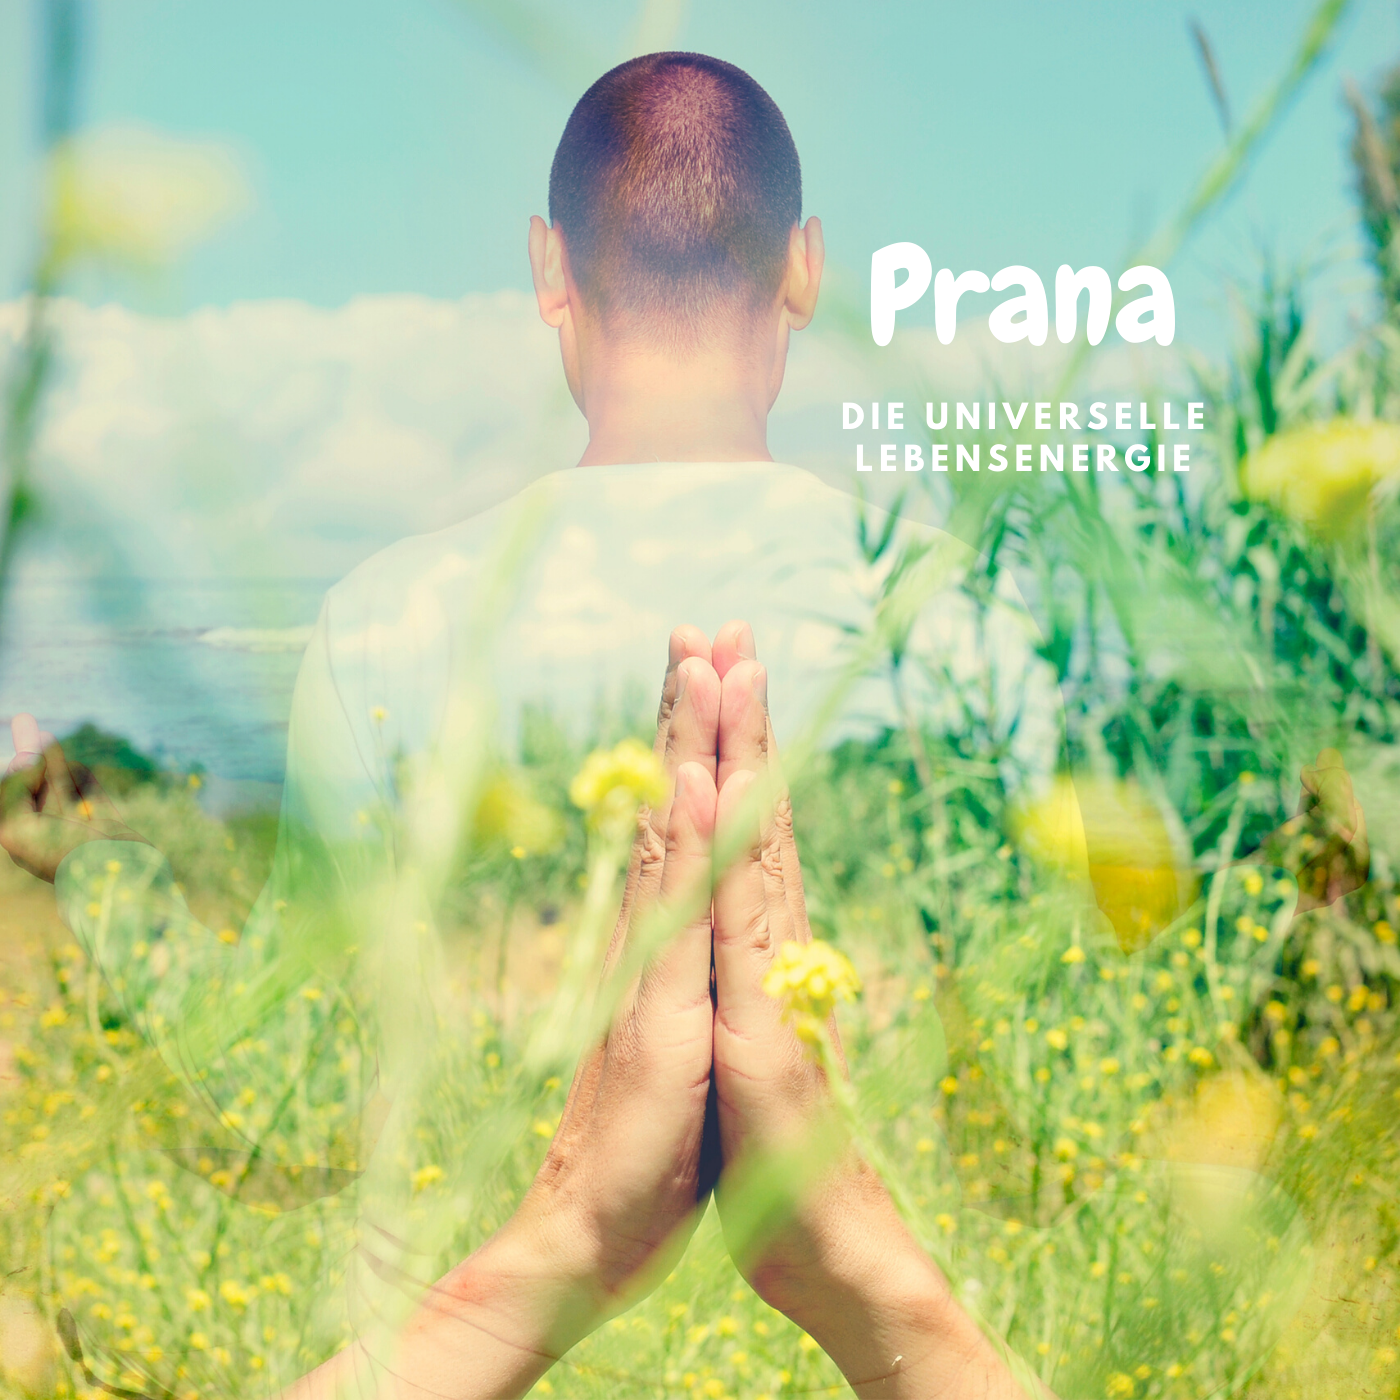 Prana – Die universelle Lebensenergie